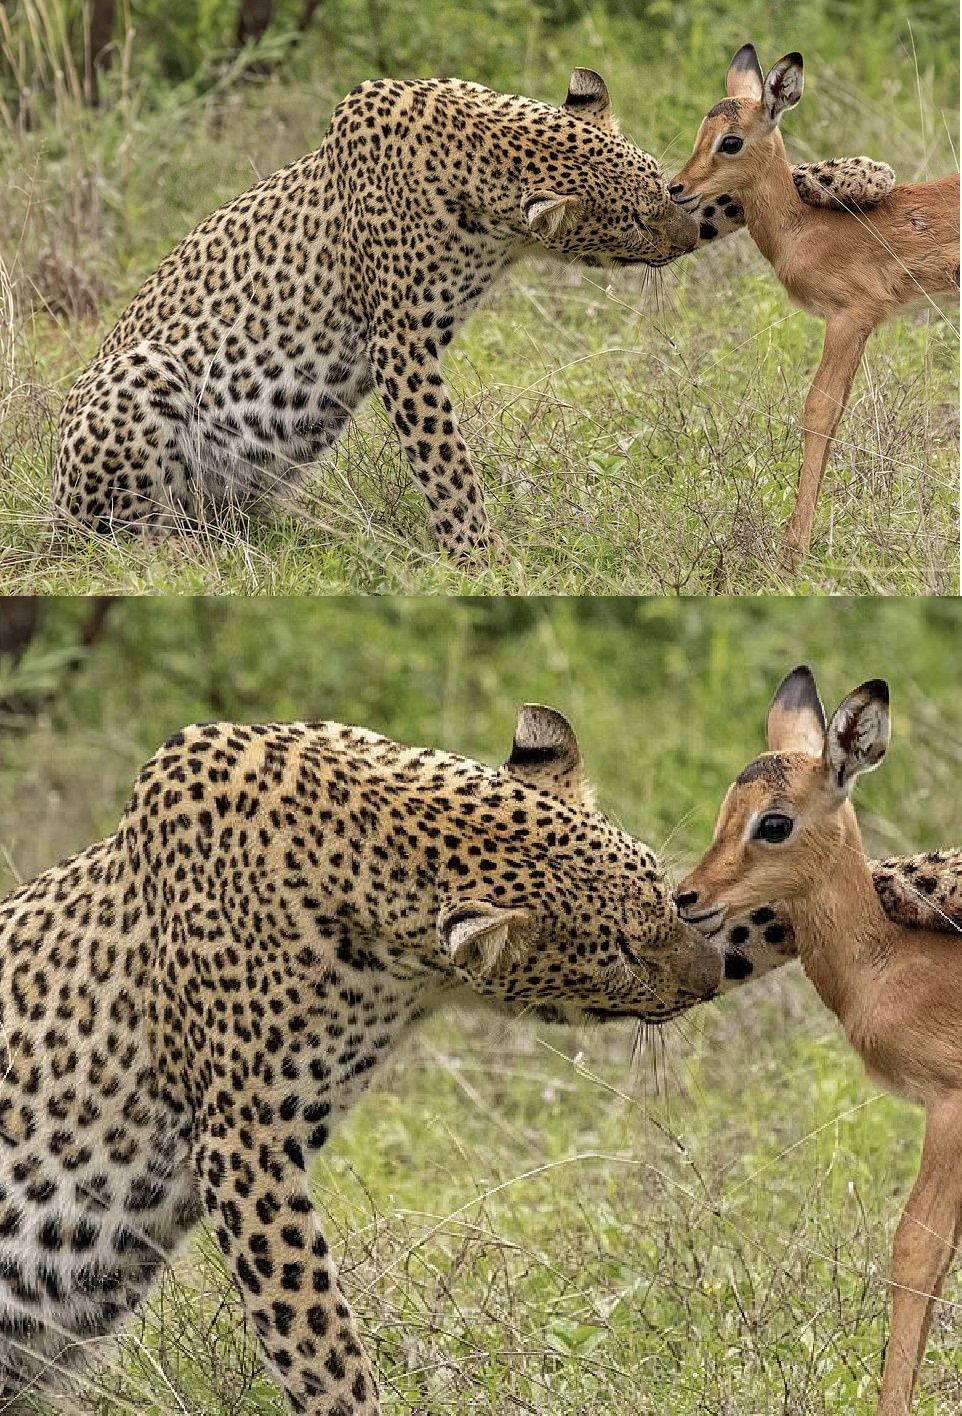 leopard hugging deer Blank Meme Template